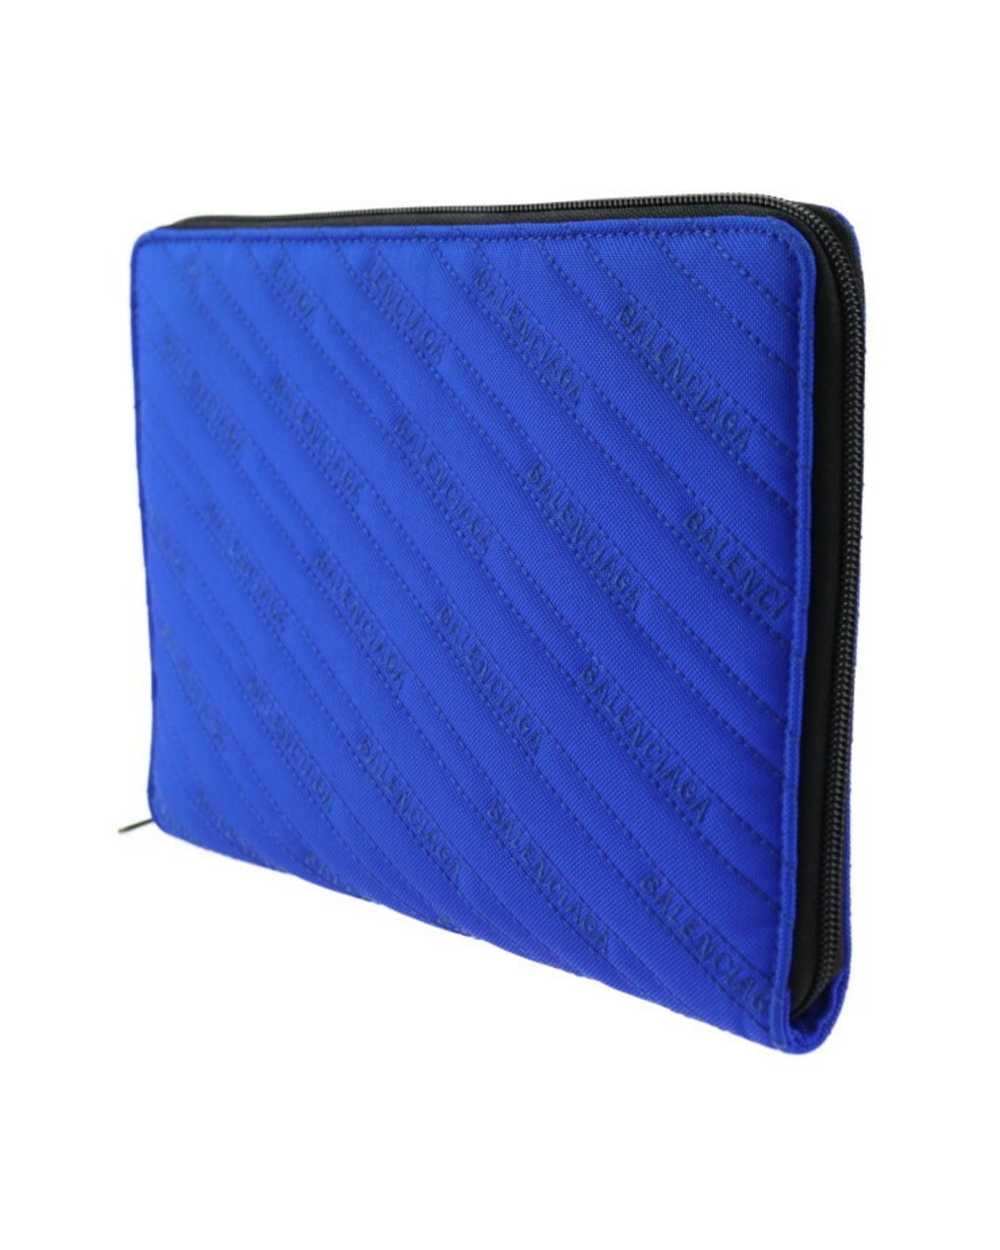 Balenciaga Blue Canvas Clutch Bag - image 2